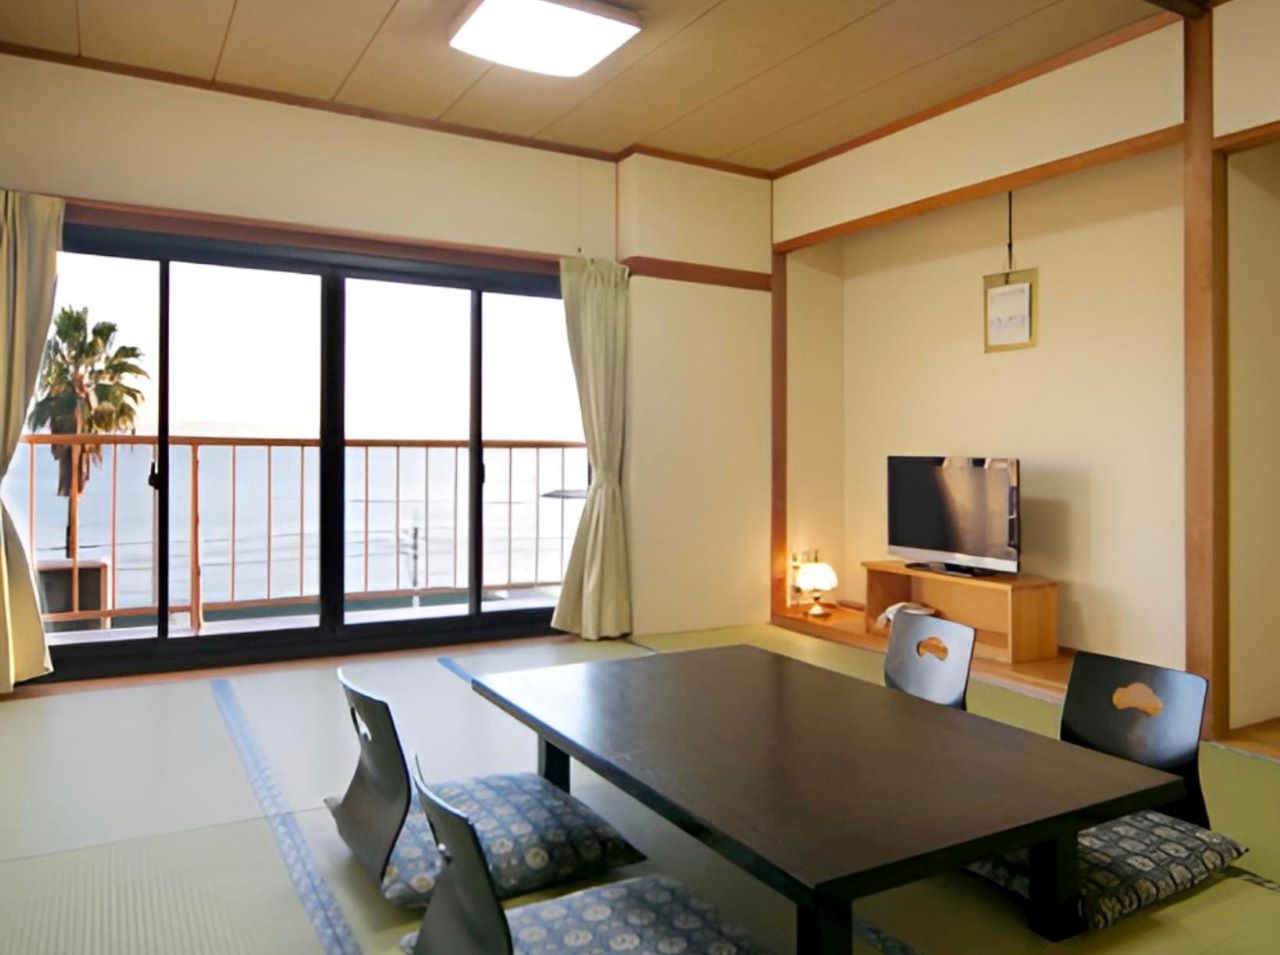 ห้องขนาด 12 เสื่อทาทามิ 12 Tatami ห้องใหญ่สำหรับครอบครัว Big room japanese style room